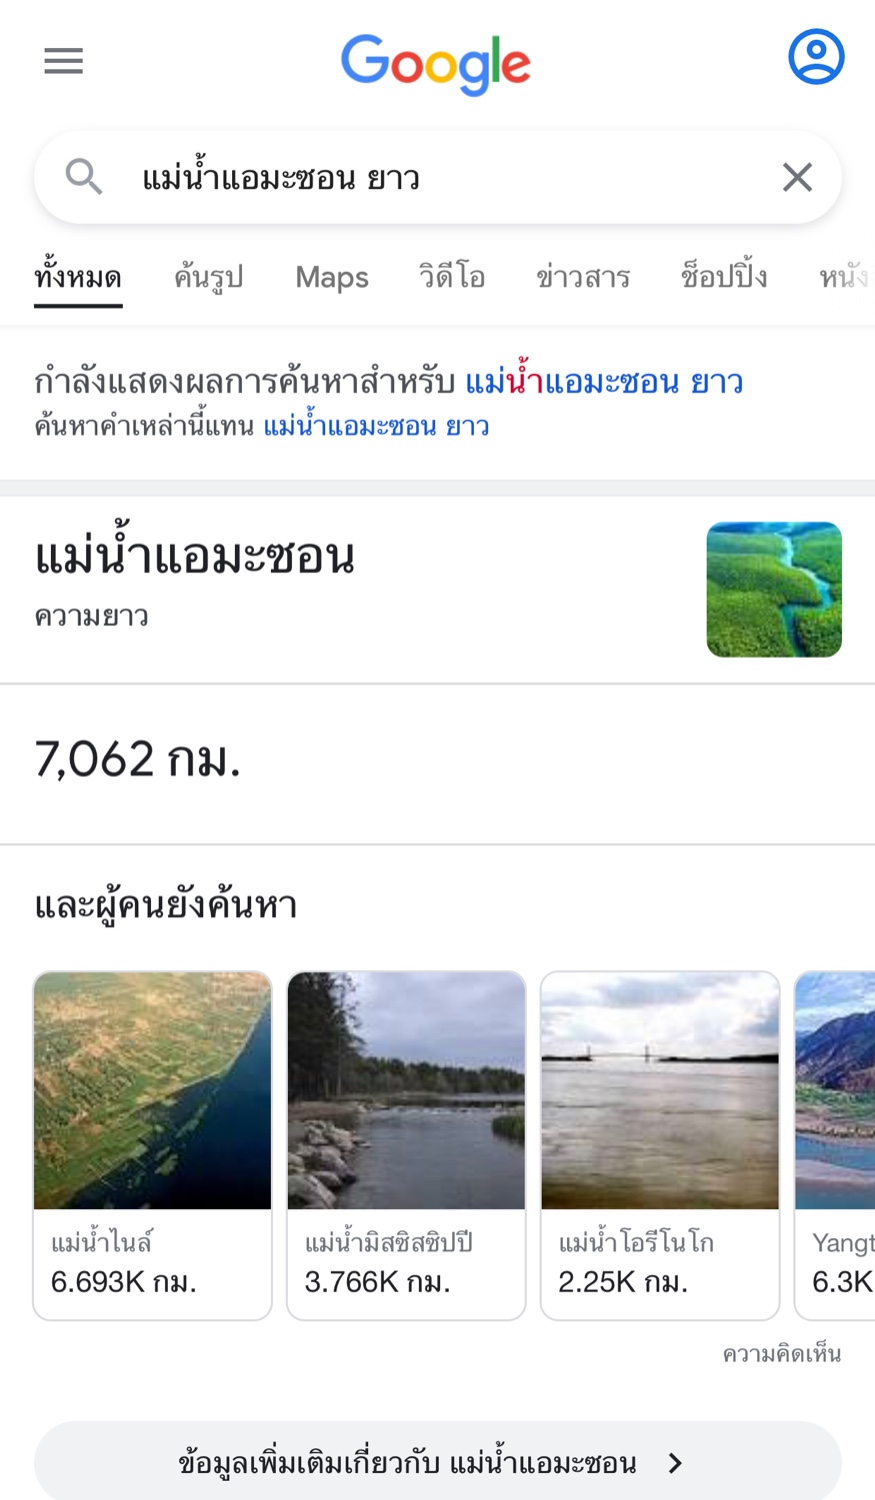 แม่น้ำสายใดที่ยาวทีสุดในโลก แม่น้ำไนล์หรือแอมะซอน - Pantip